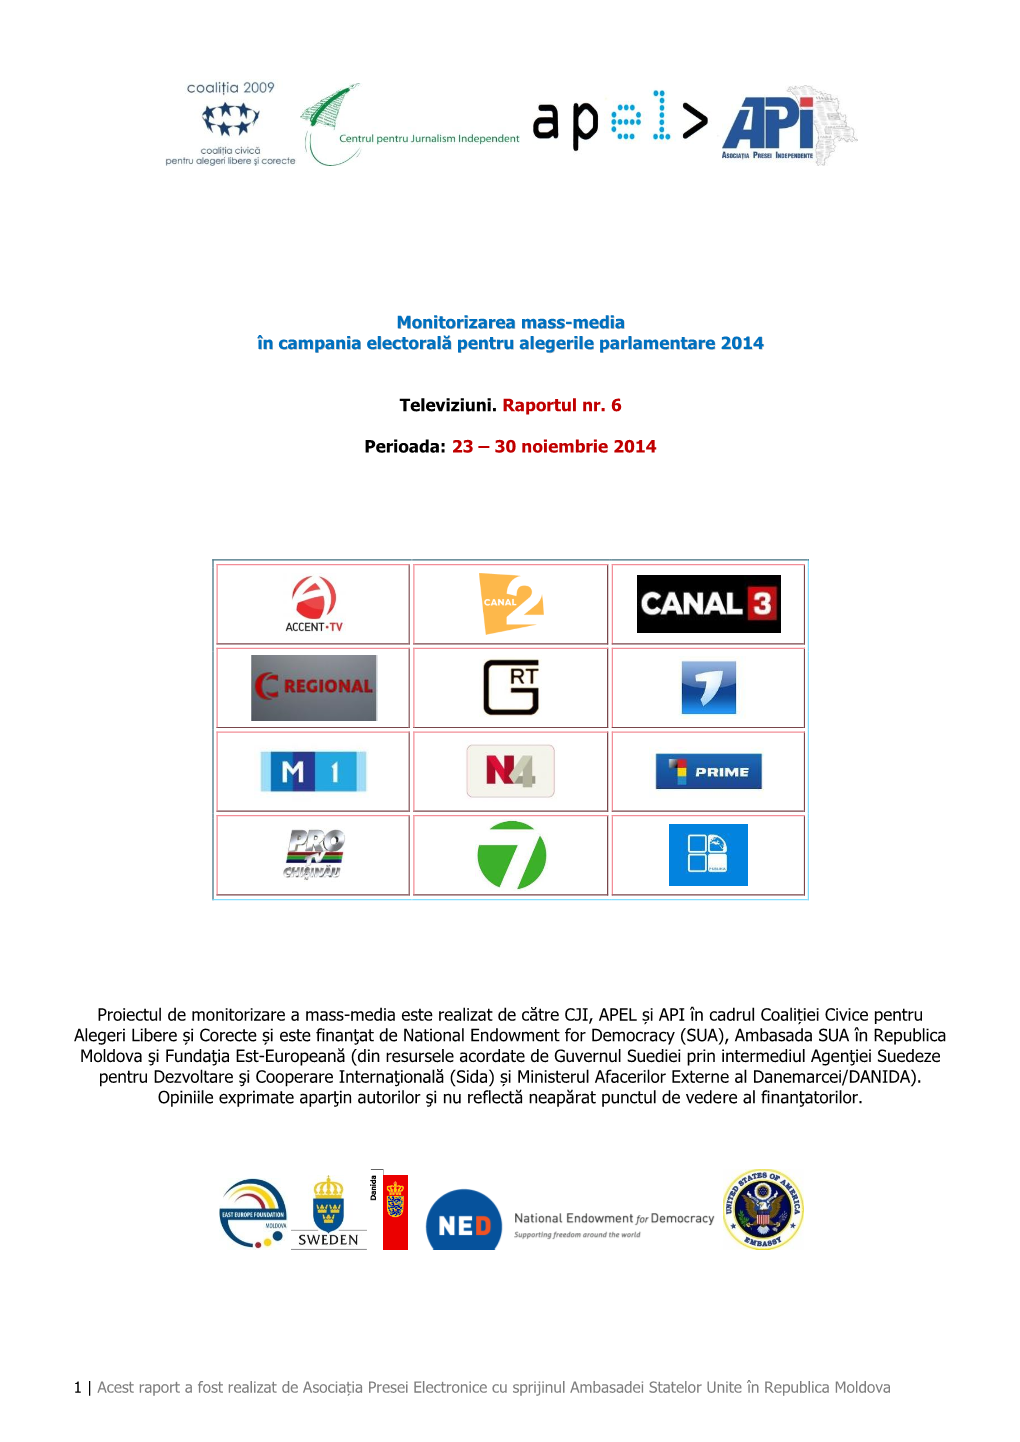 Raport 6, Ccalc, 23-30 Noiembrie 2014